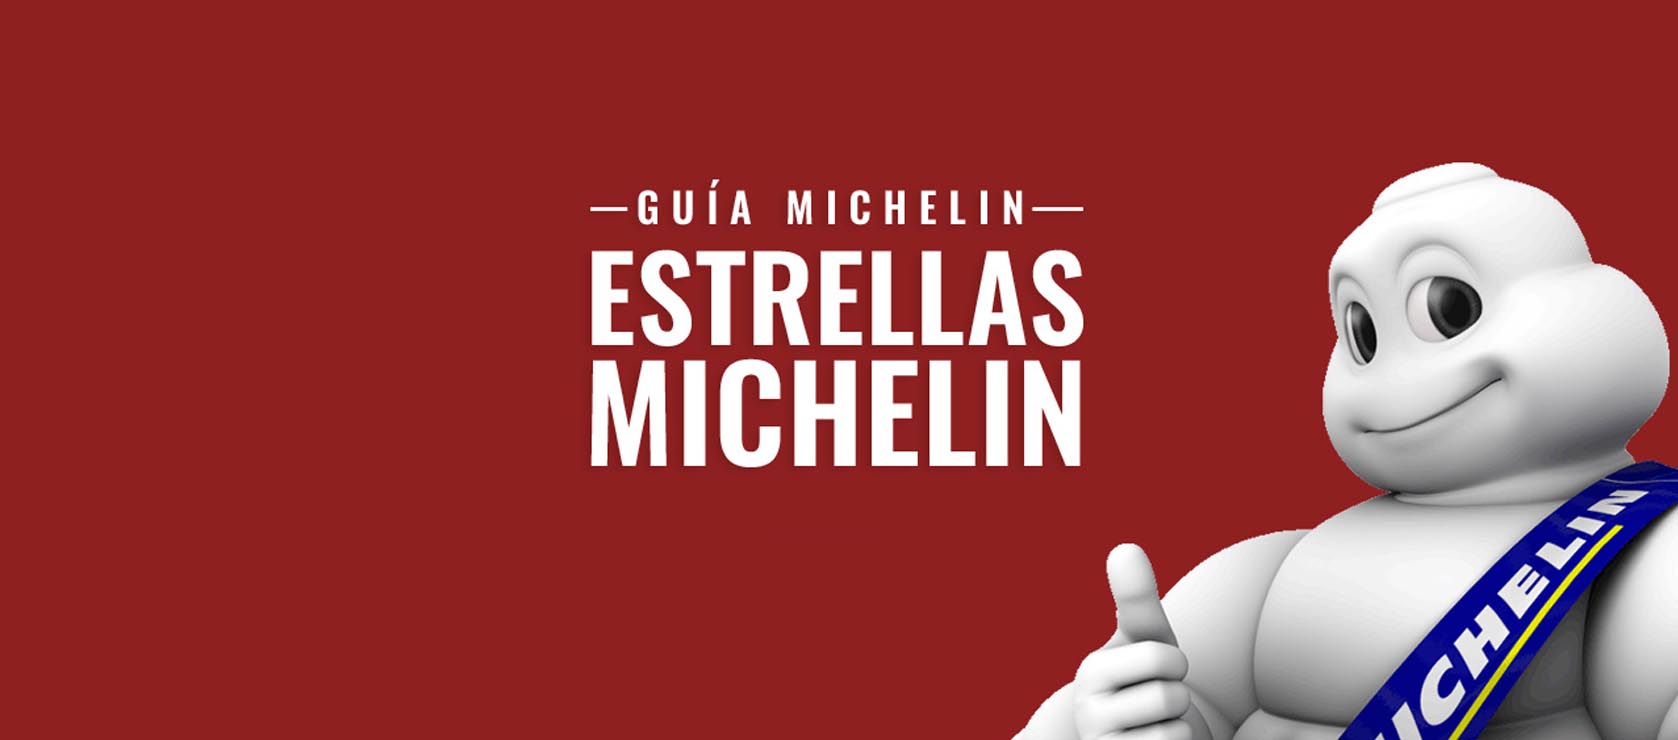 Estrella Michelin